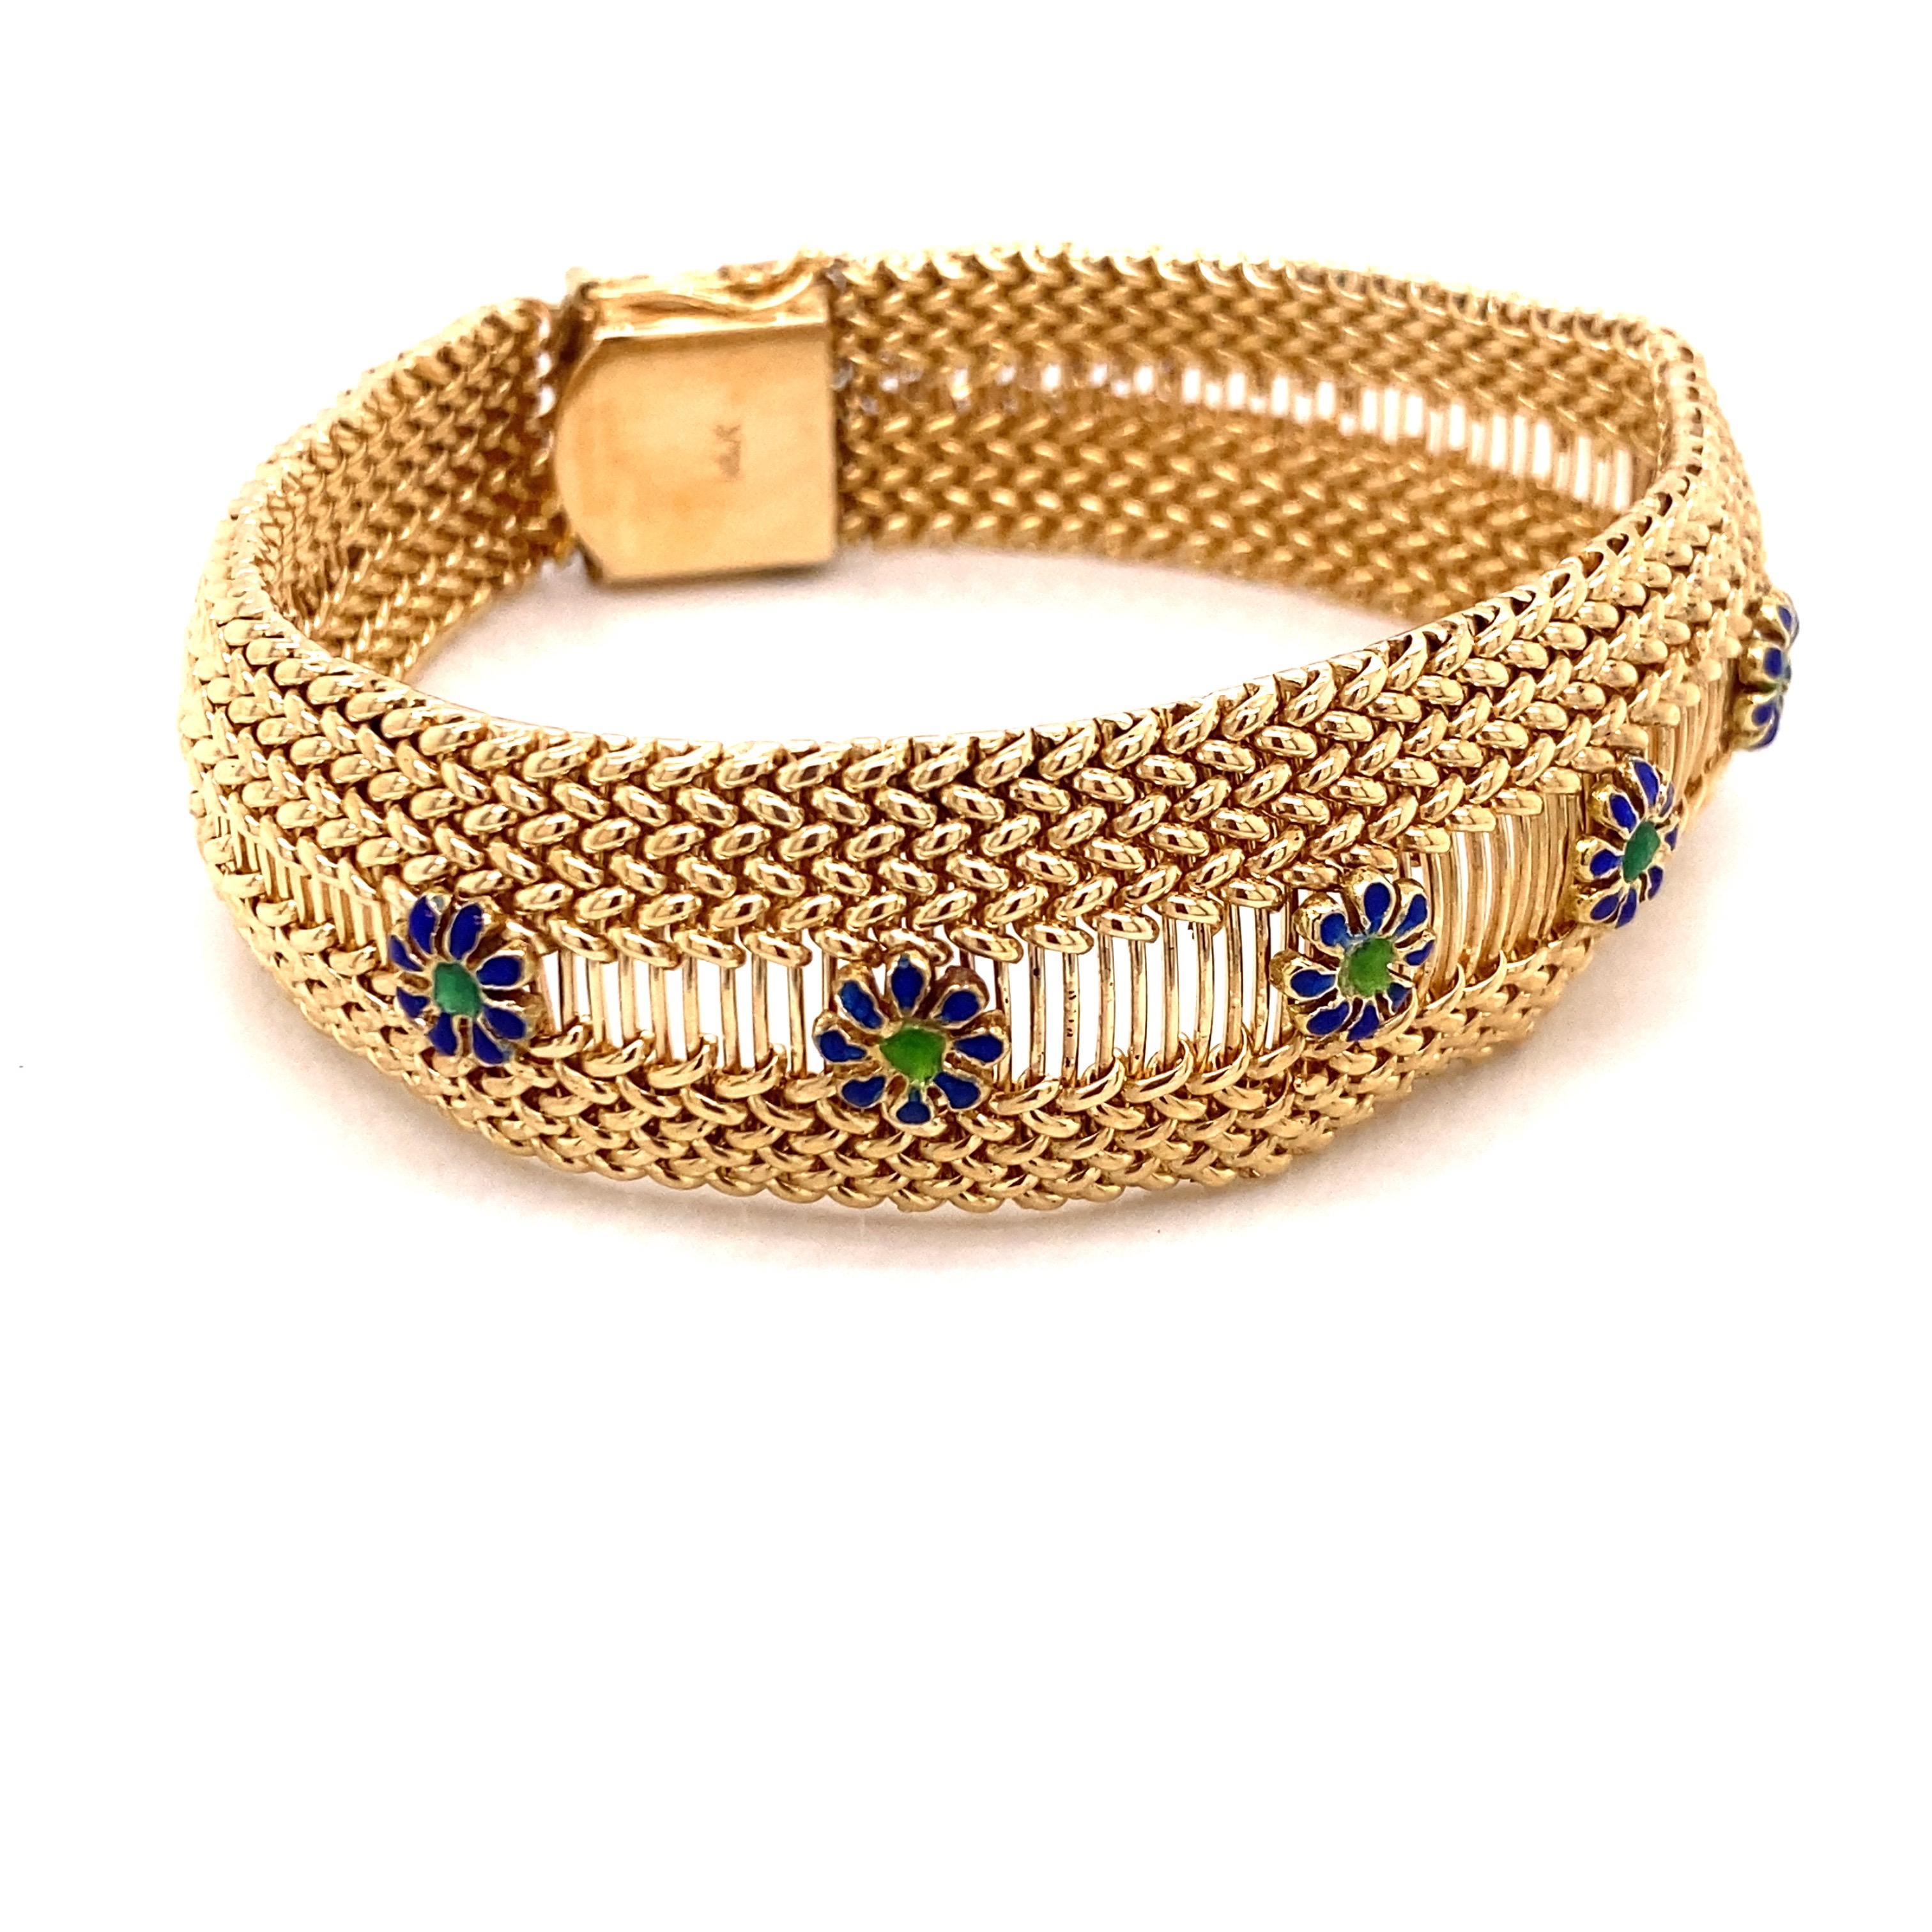 Vintage 1960s 14K Yellow Gold Mesh Bracelet avec fleurs en émail et rubis - Le bracelet mesure 7.5 pouces de long et .80 pouces de large au centre. Il y a 6 fleurs avec des pétales en émail bleu et un centre en émail vert. Le bracelet est doté d'un